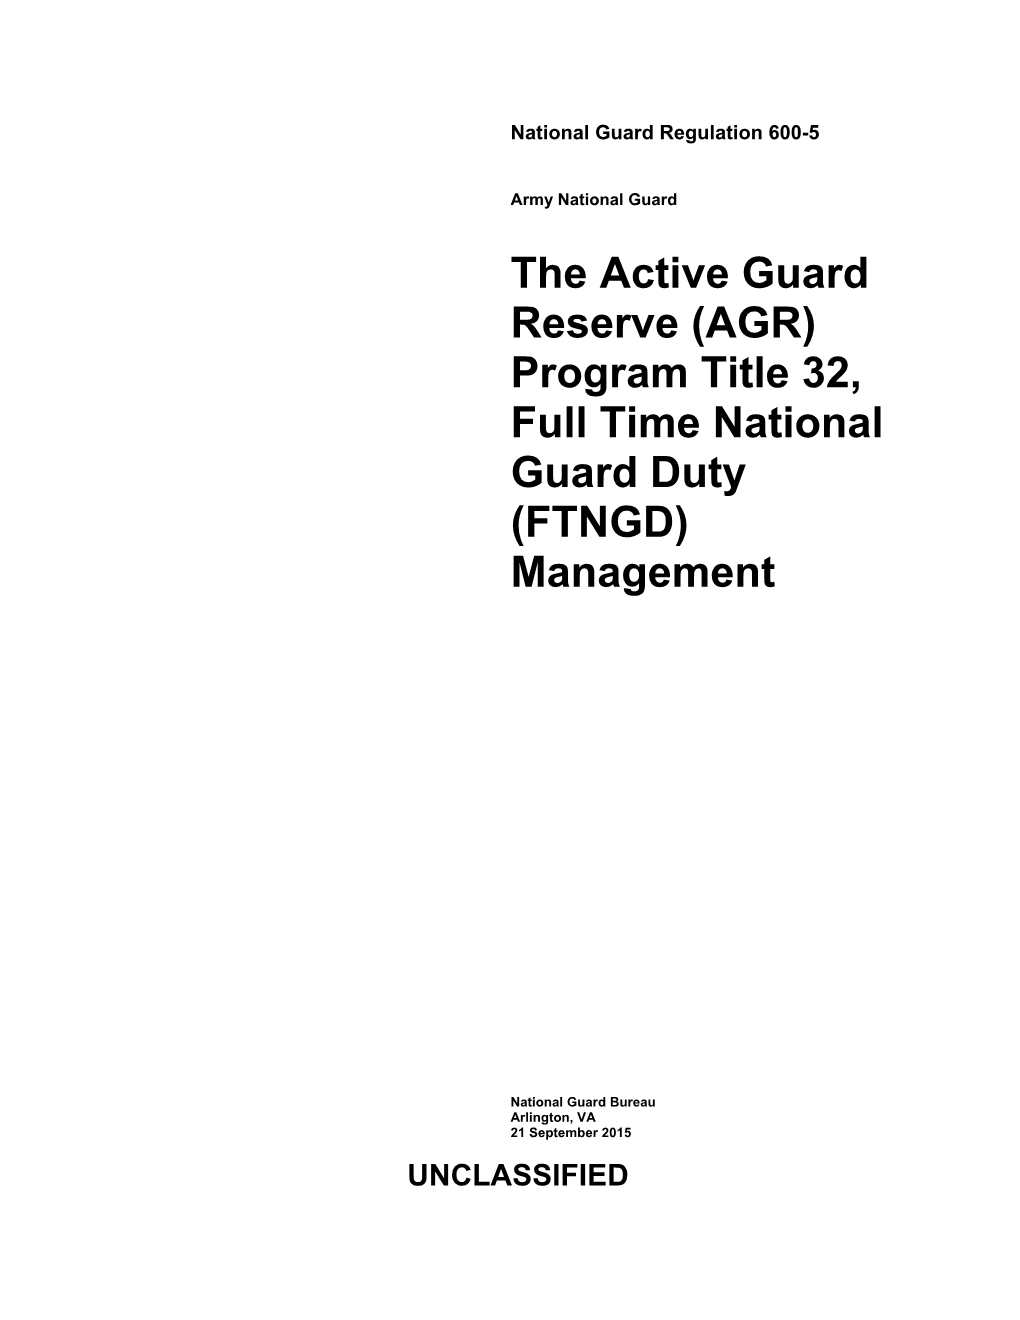 (AGR) Program Title 32, Full Time National Guard Duty (FTNGD) Management